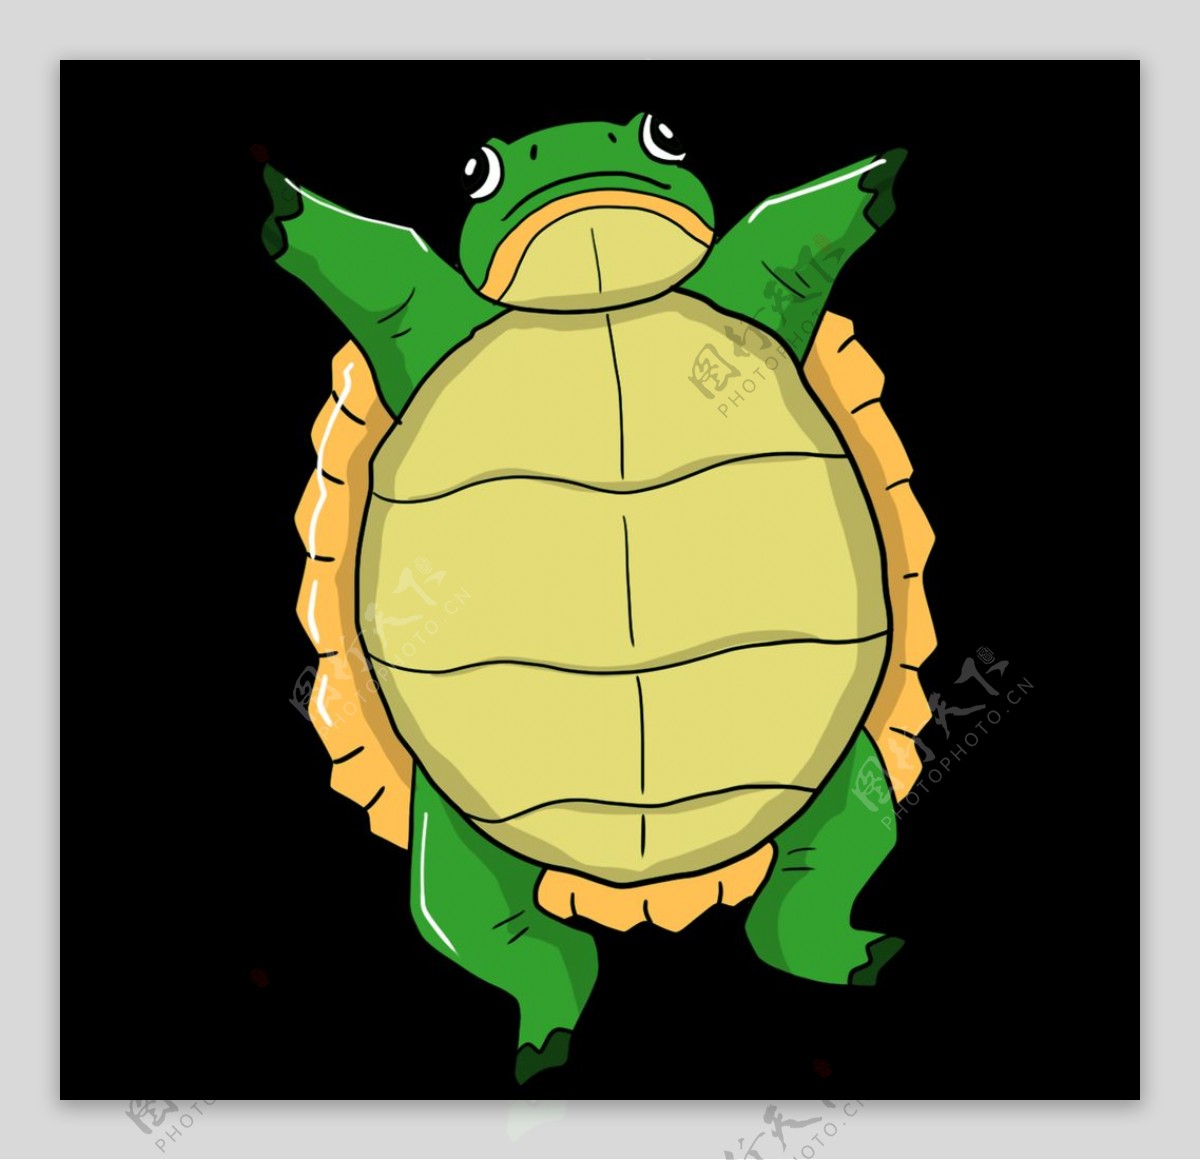 向量卡通背著木板的烏龜, 烏龜剪貼畫, 卡通矢量圖, 彩繪的烏龜向量圖案素材免費下載，PNG，EPS和AI素材下載 - Pngtree